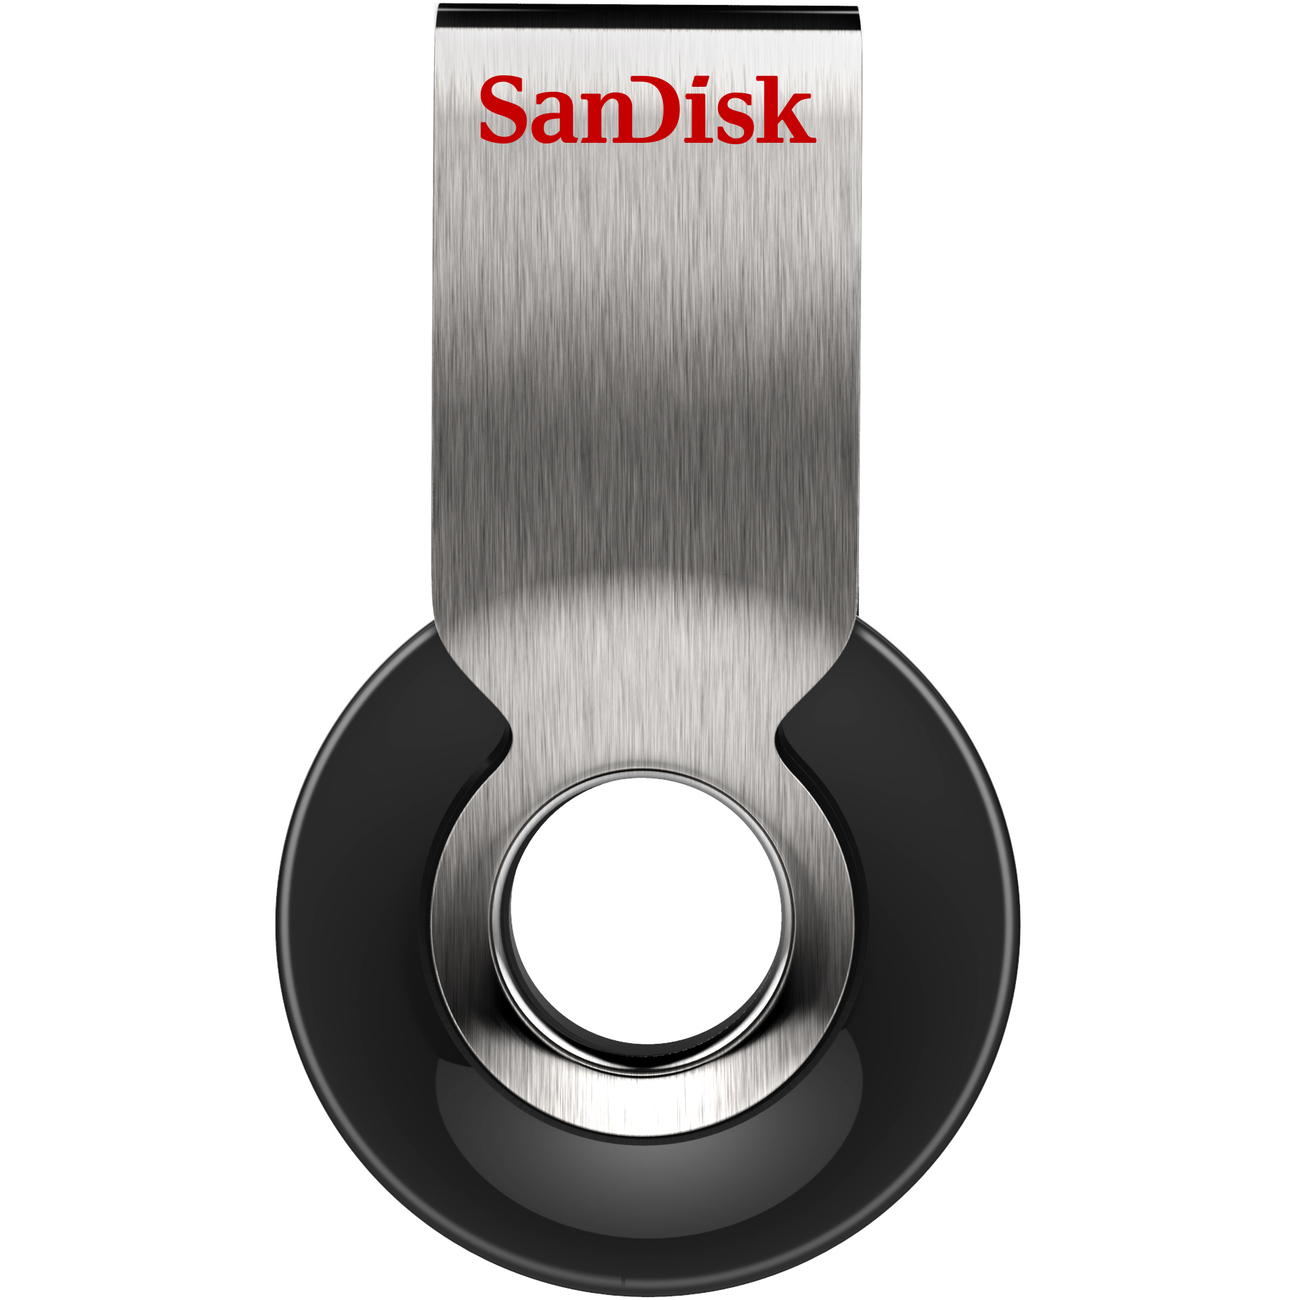 SanDisk Cruzer Orbit 8GB AM